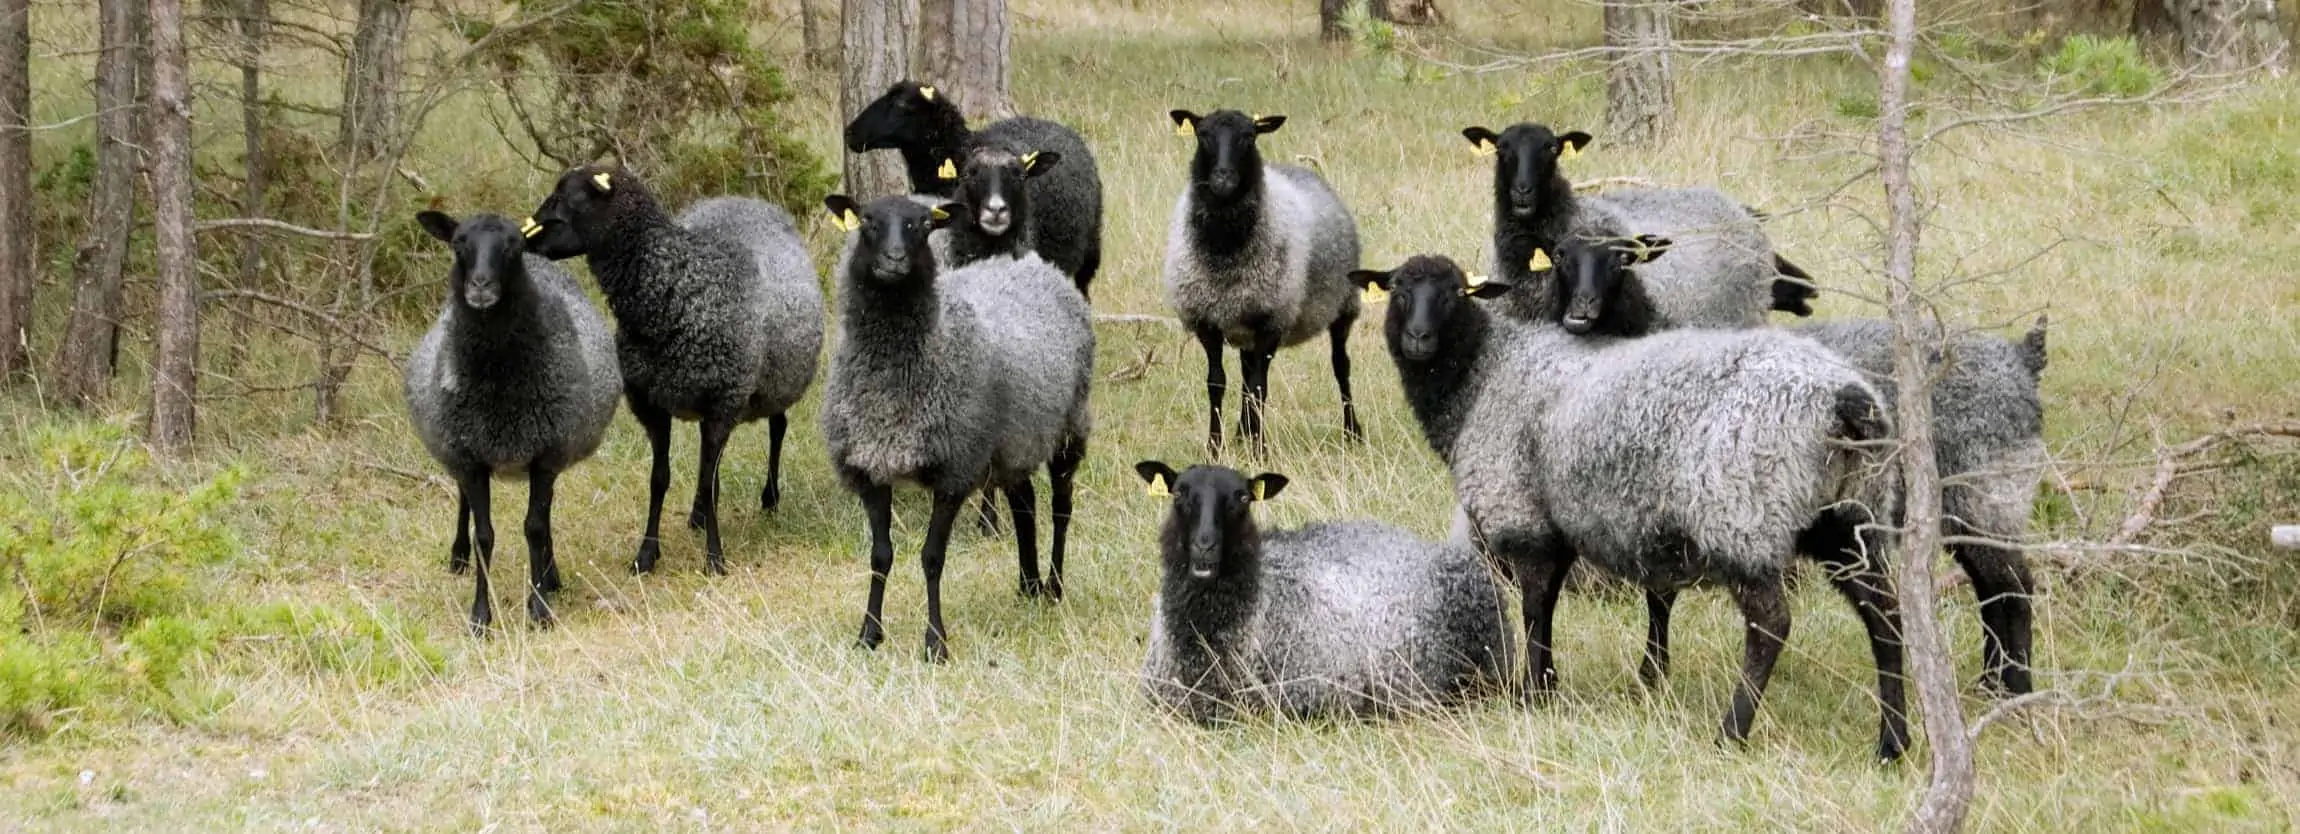 gotlang sheep wool products